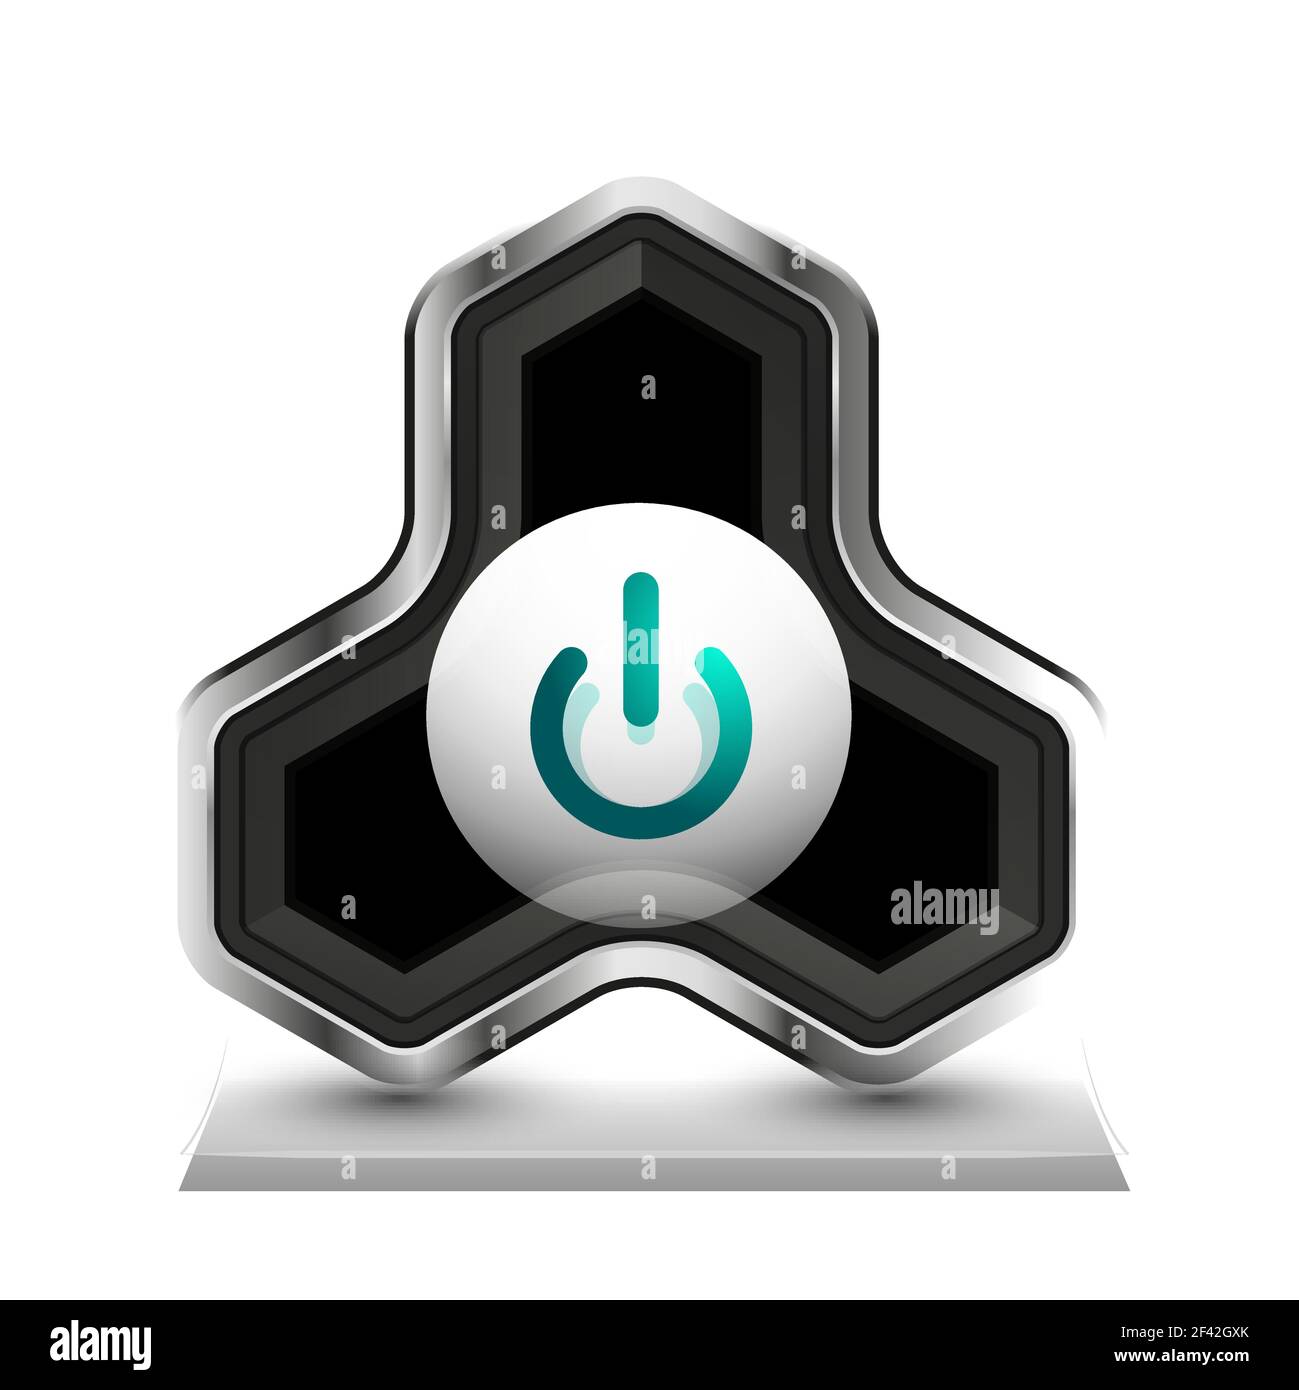 Techno futuristic start power button. Techno futuristic start power button. Vector illustration Stock Vector